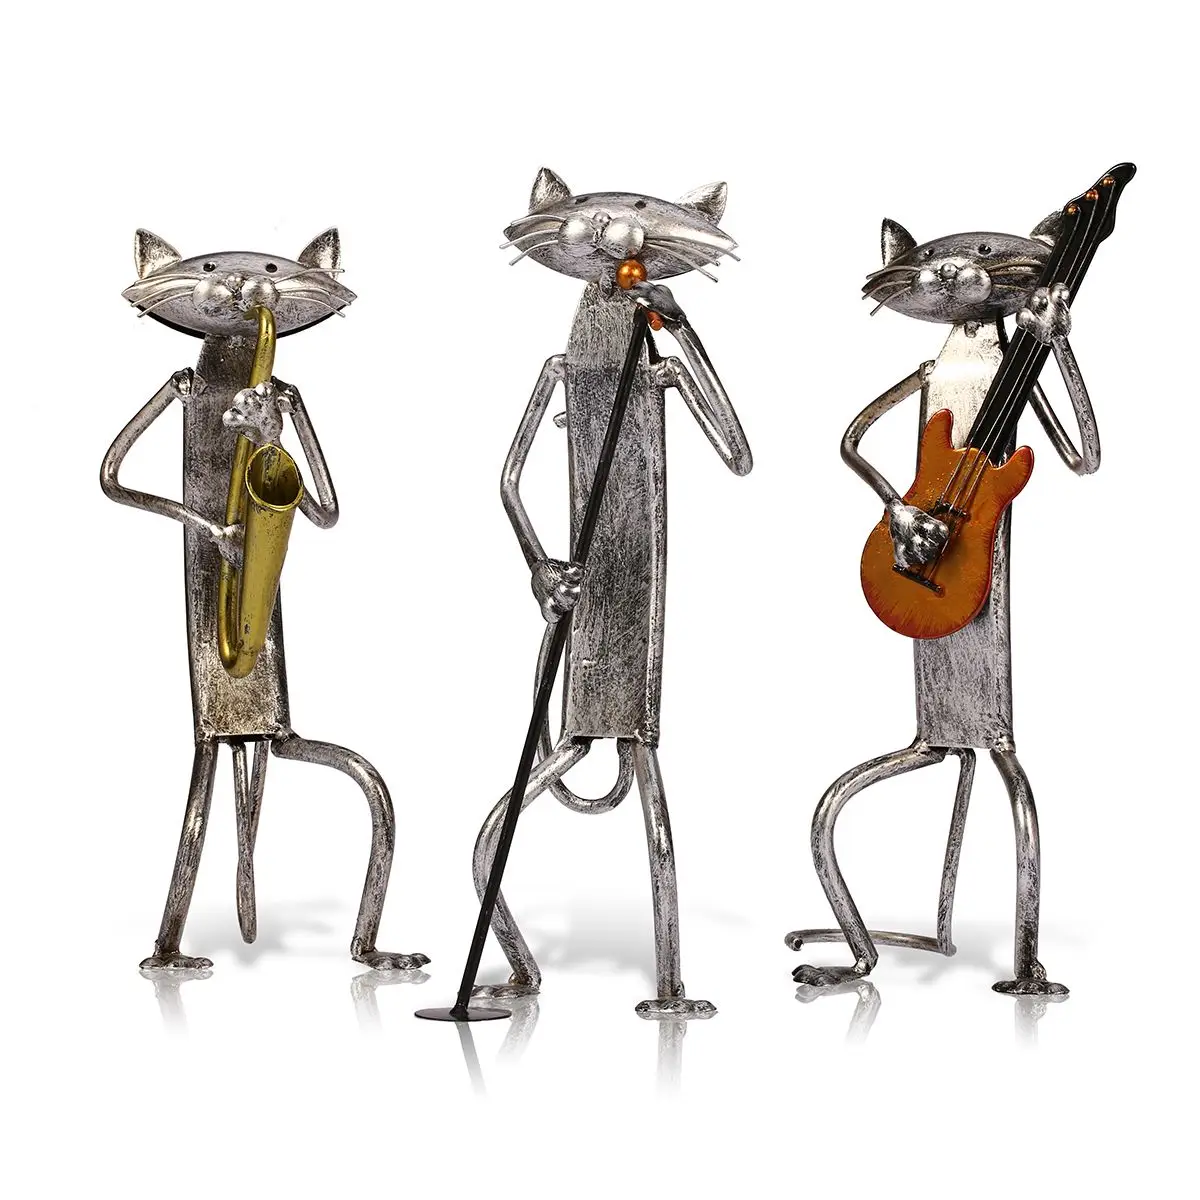 Металлическая скульптура tooarts поделки для декорирования интерьера игры саксофон кошка предметы домашней мебели ремесла